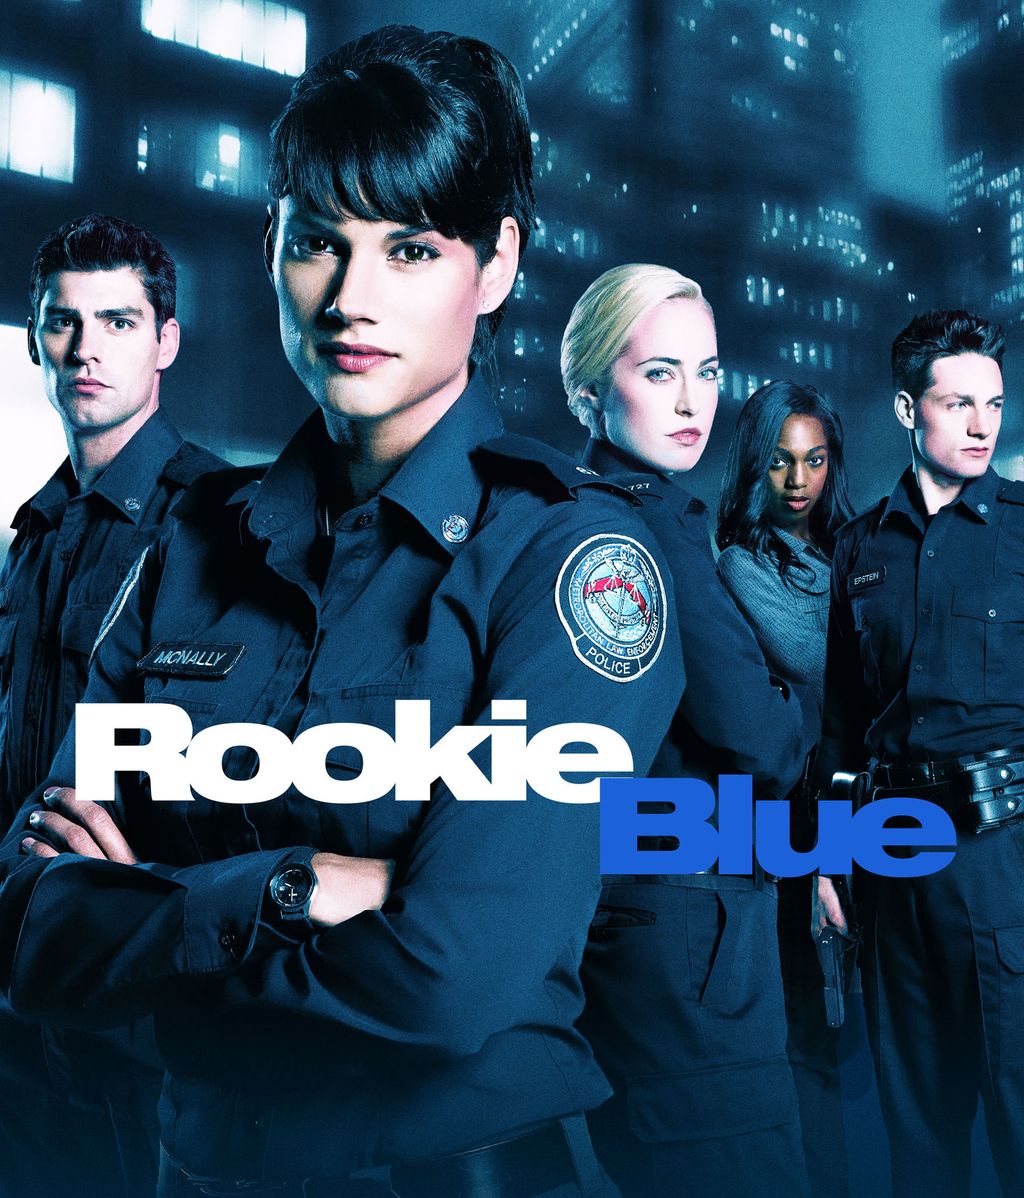 Divinity apuesta por la ficción policial con el estreno de la tercera temporada de “Rookie Blue”